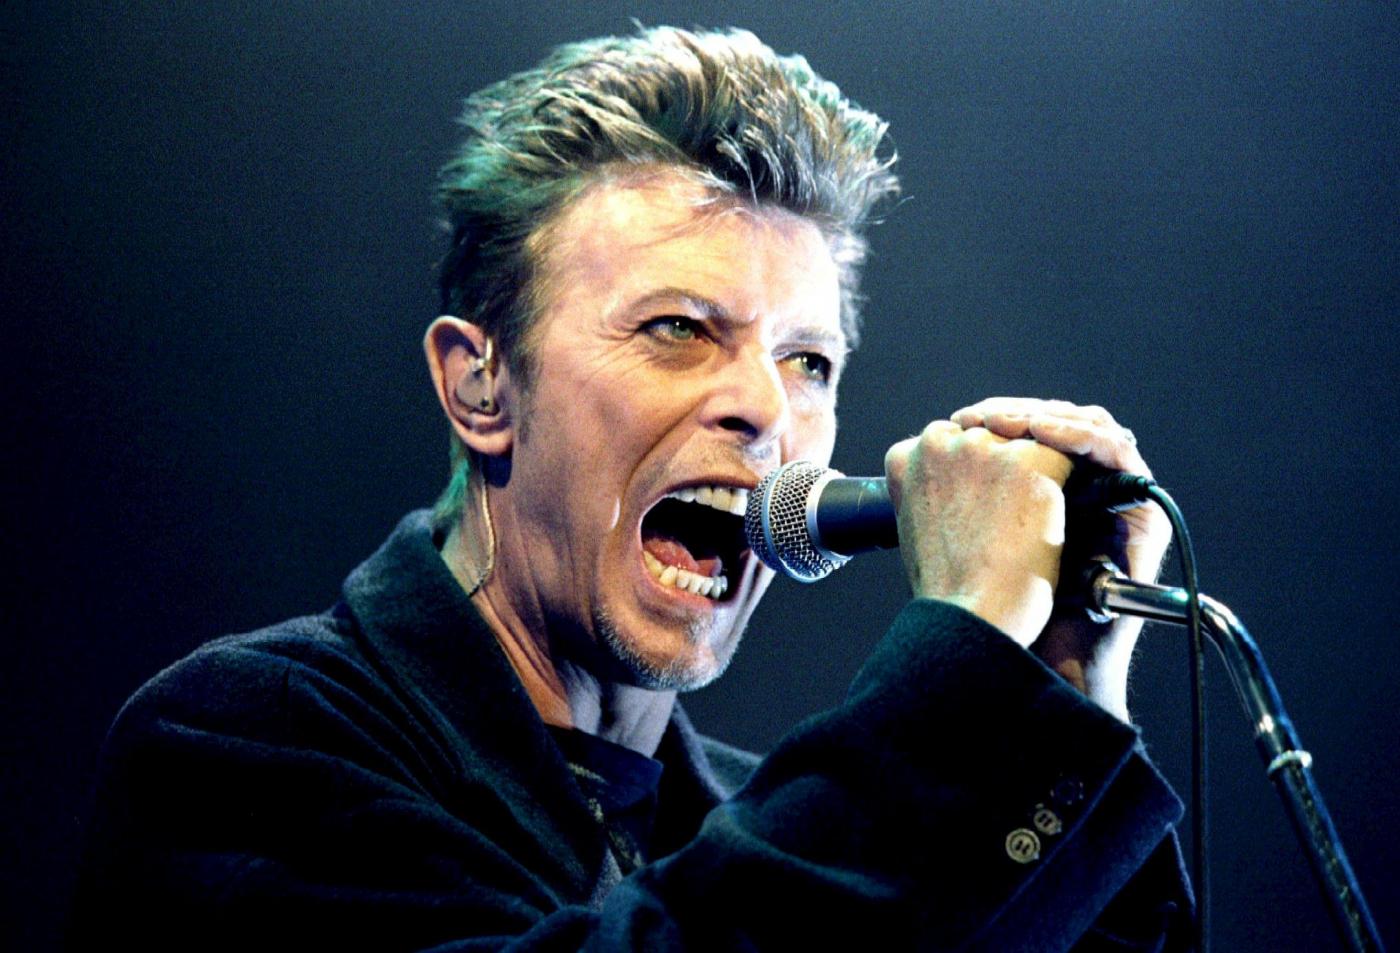 Morto David Bowie, aveva 69 anni